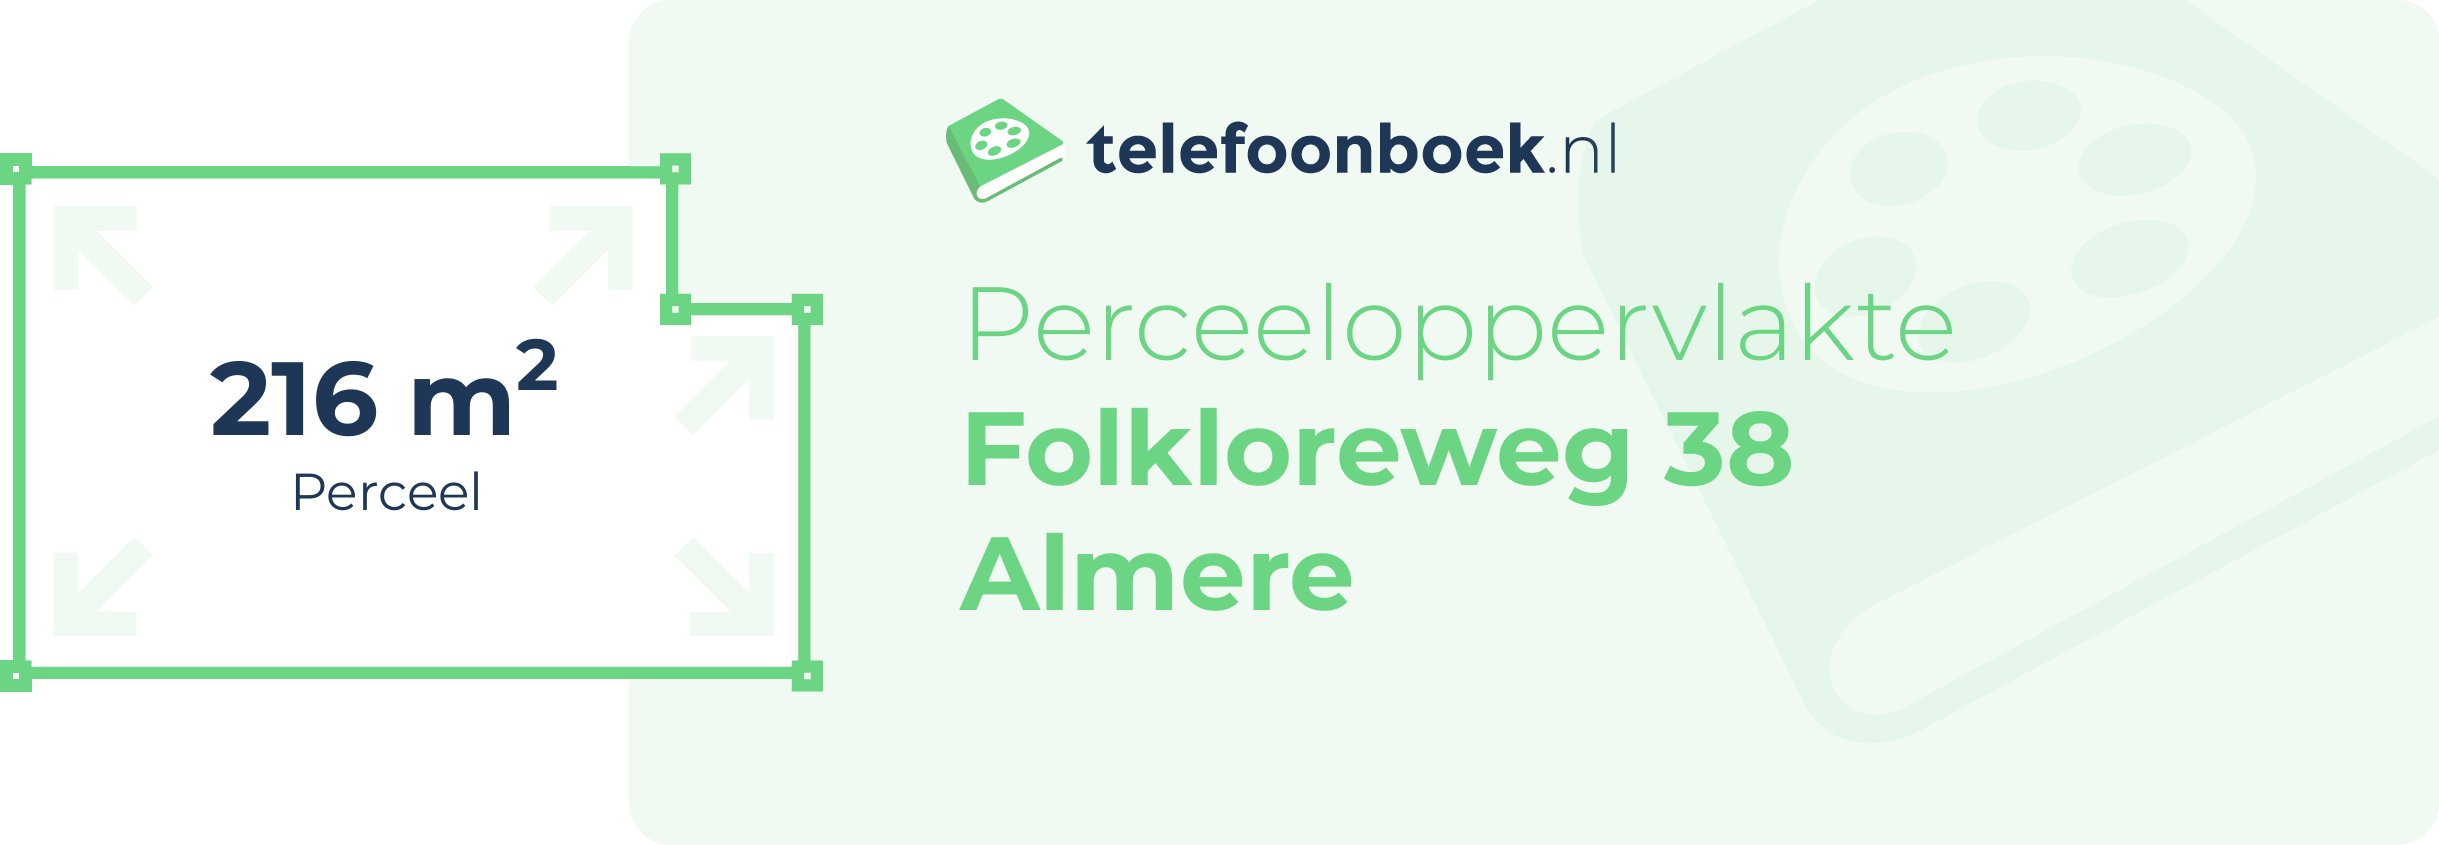 Perceeloppervlakte Folkloreweg 38 Almere